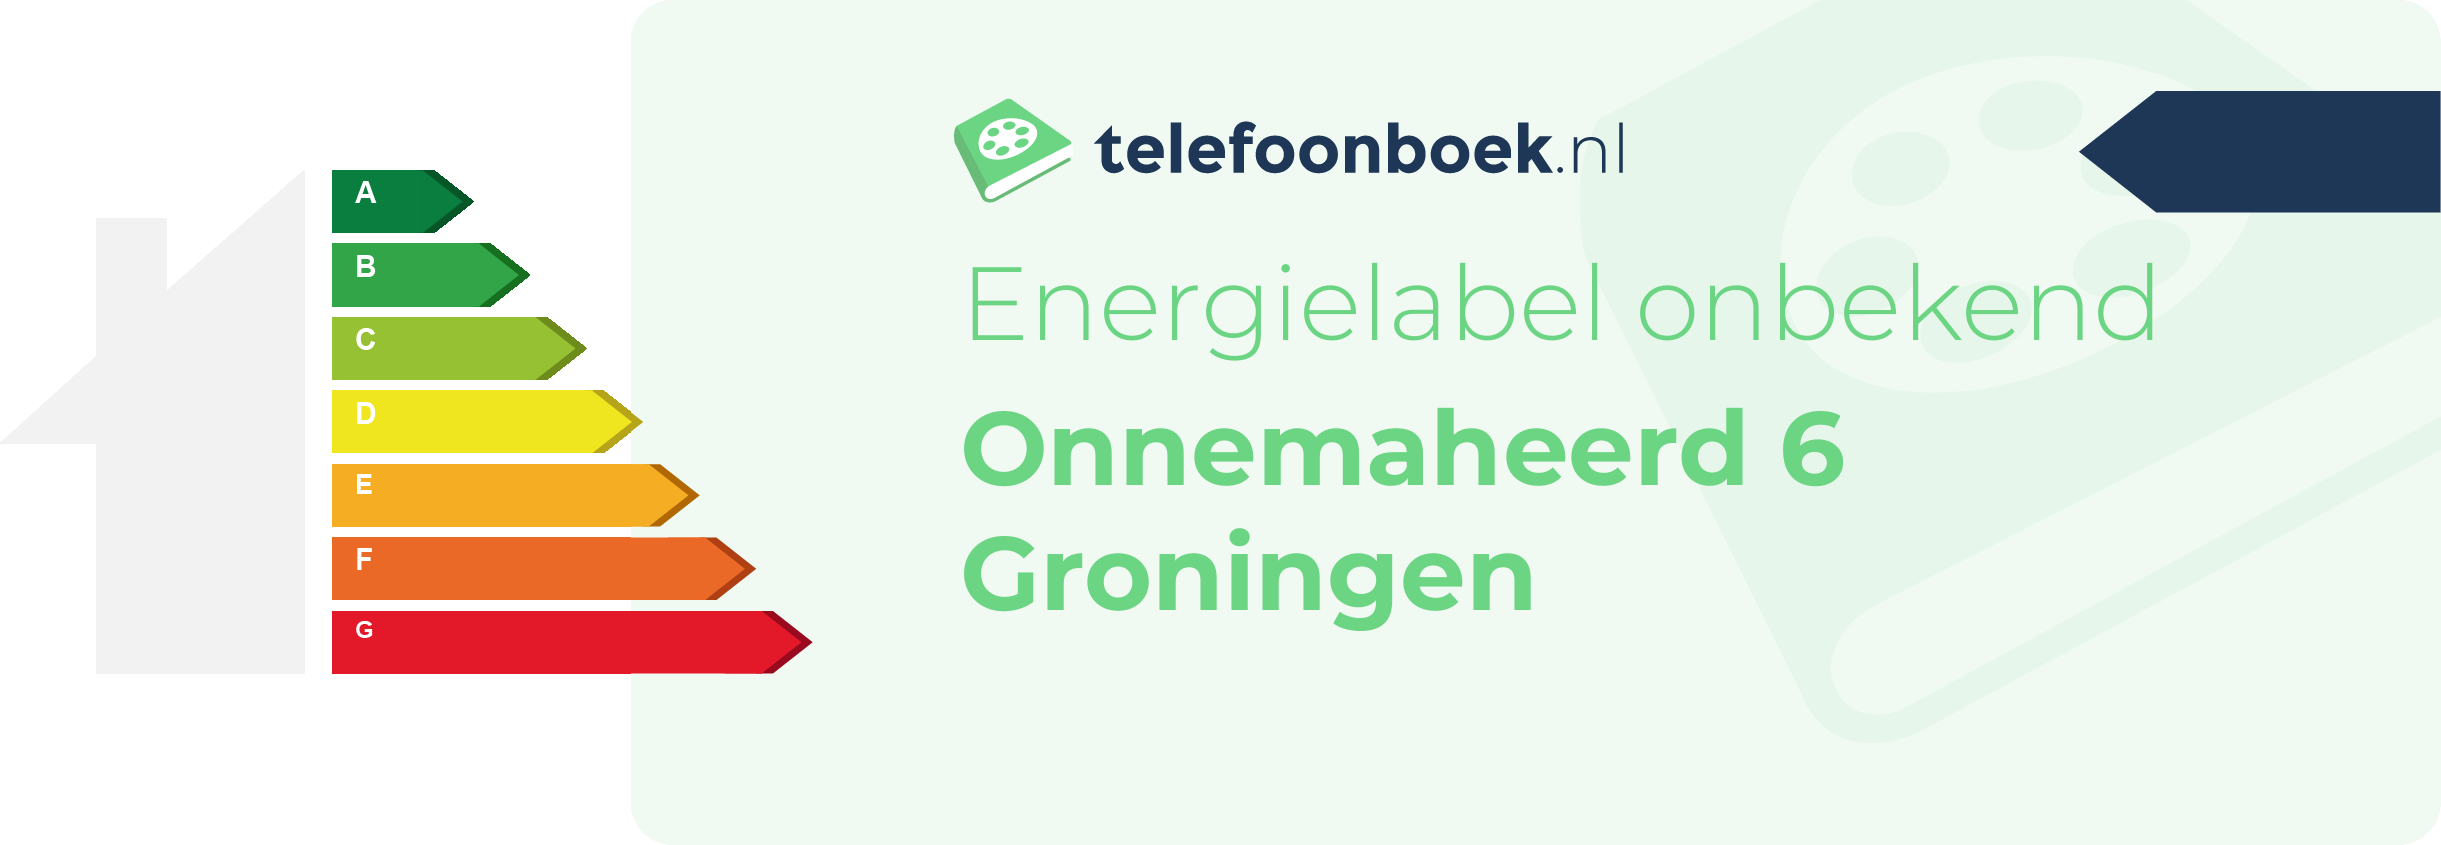 Energielabel Onnemaheerd 6 Groningen